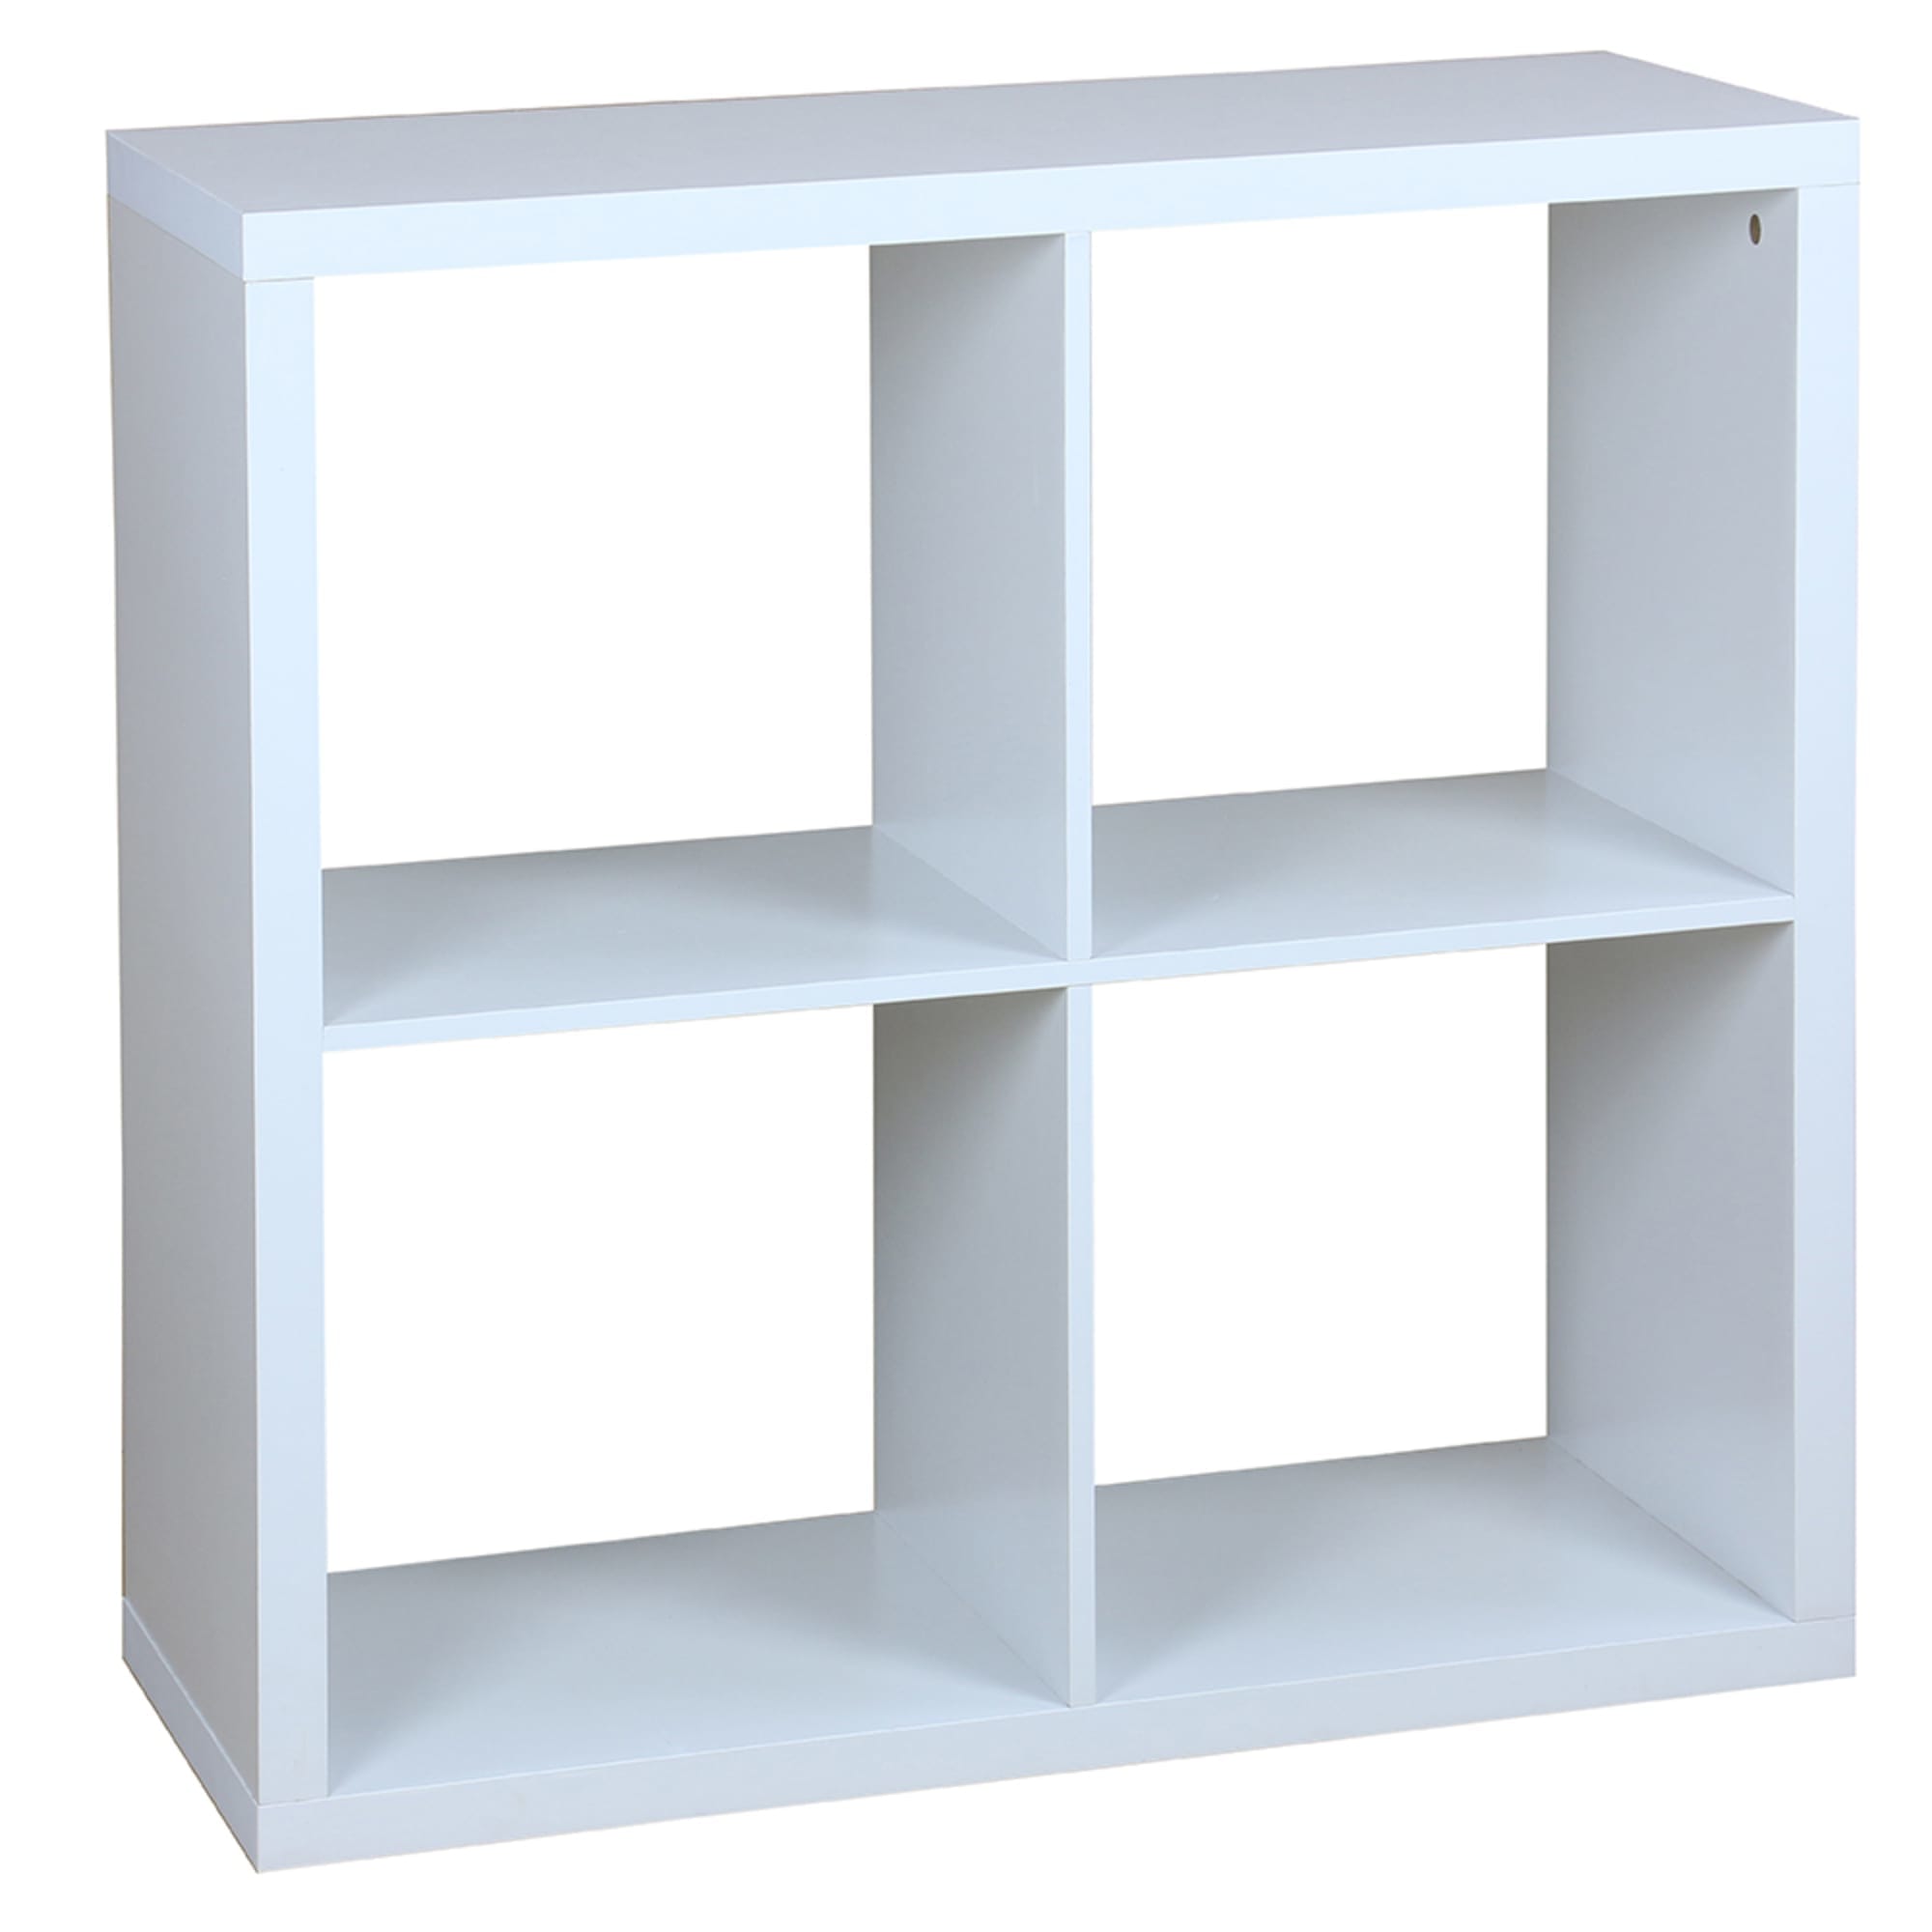 Home Basics 4 Open Cube Organizing Wood Storage Shelf, White $80.00 EACH, CASE PACK OF 1